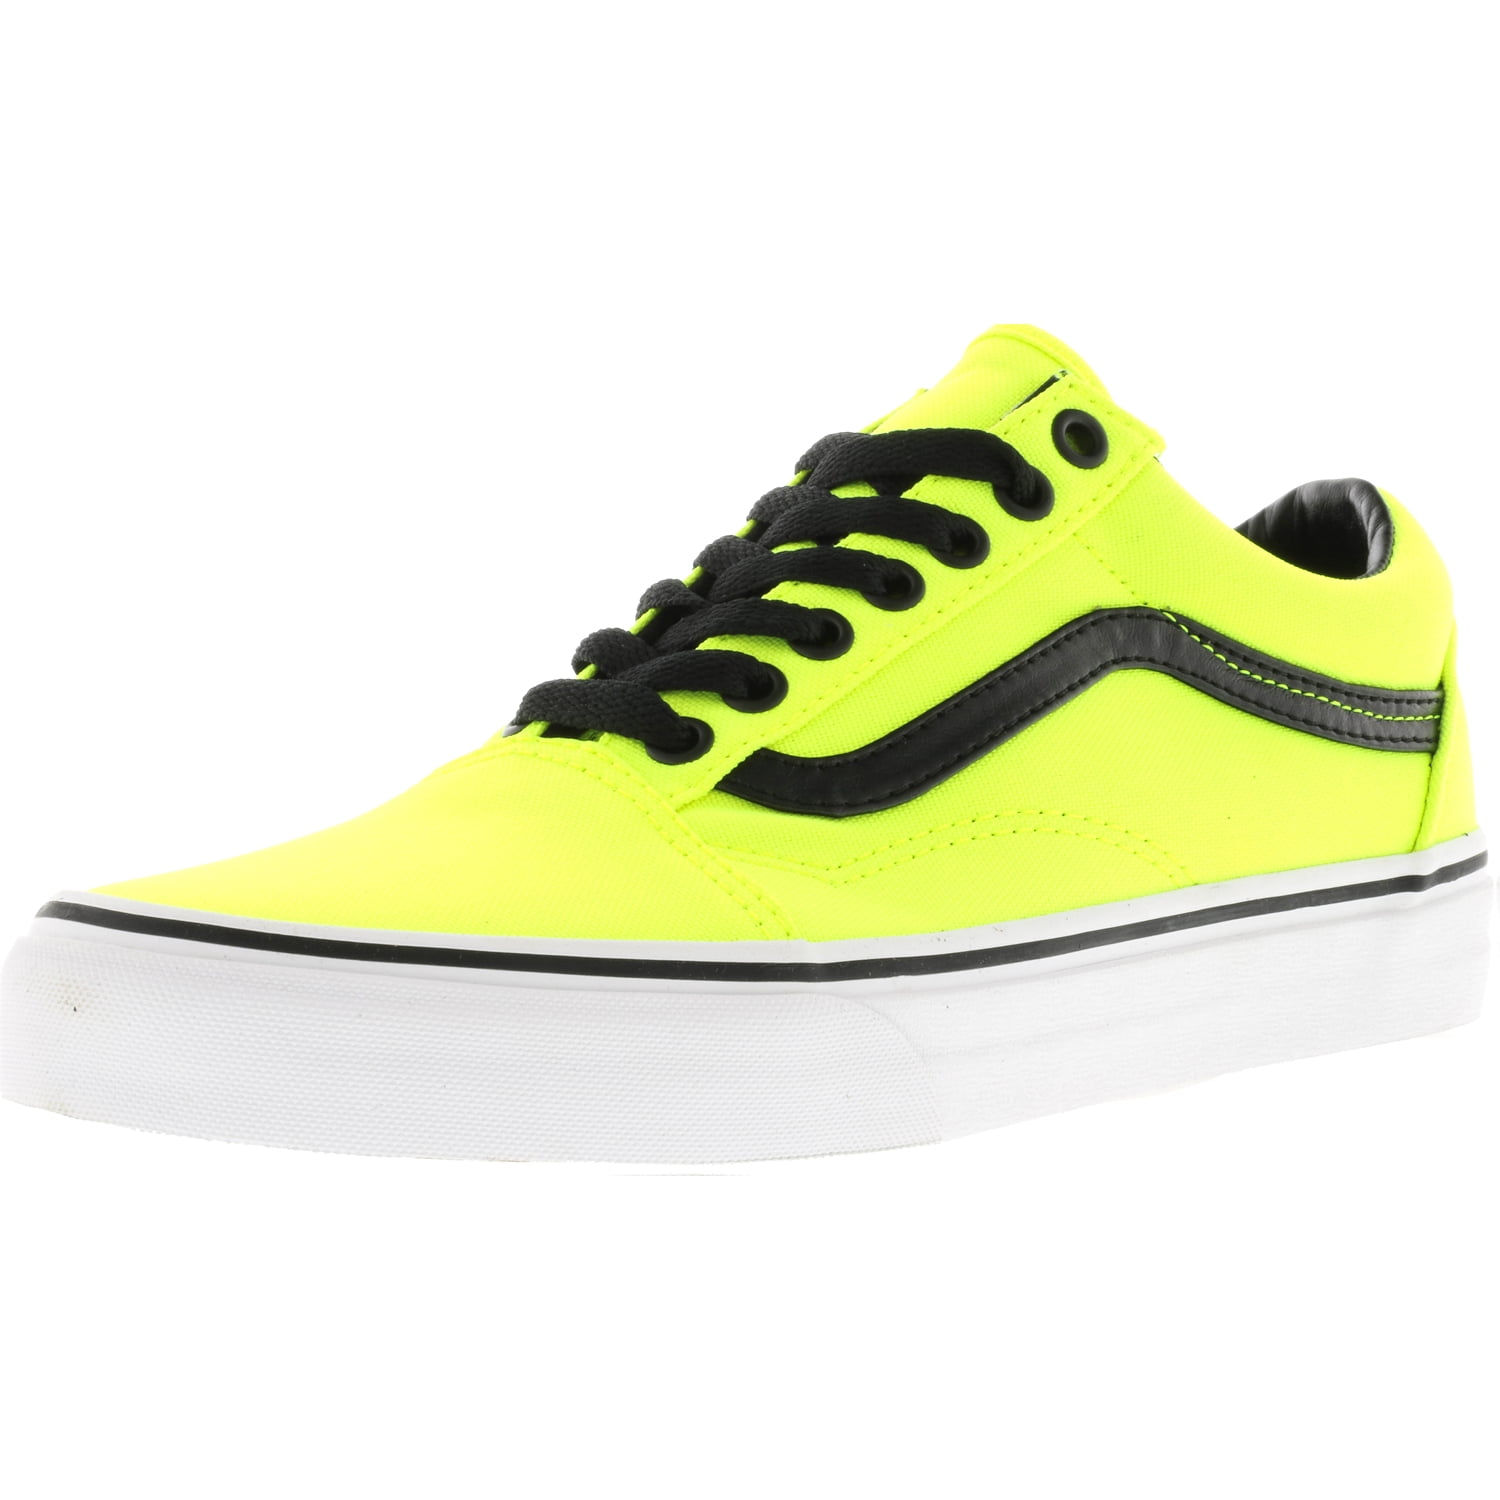 Yellow Vans Tennis Shoes Flash Sales | bellvalefarms.com